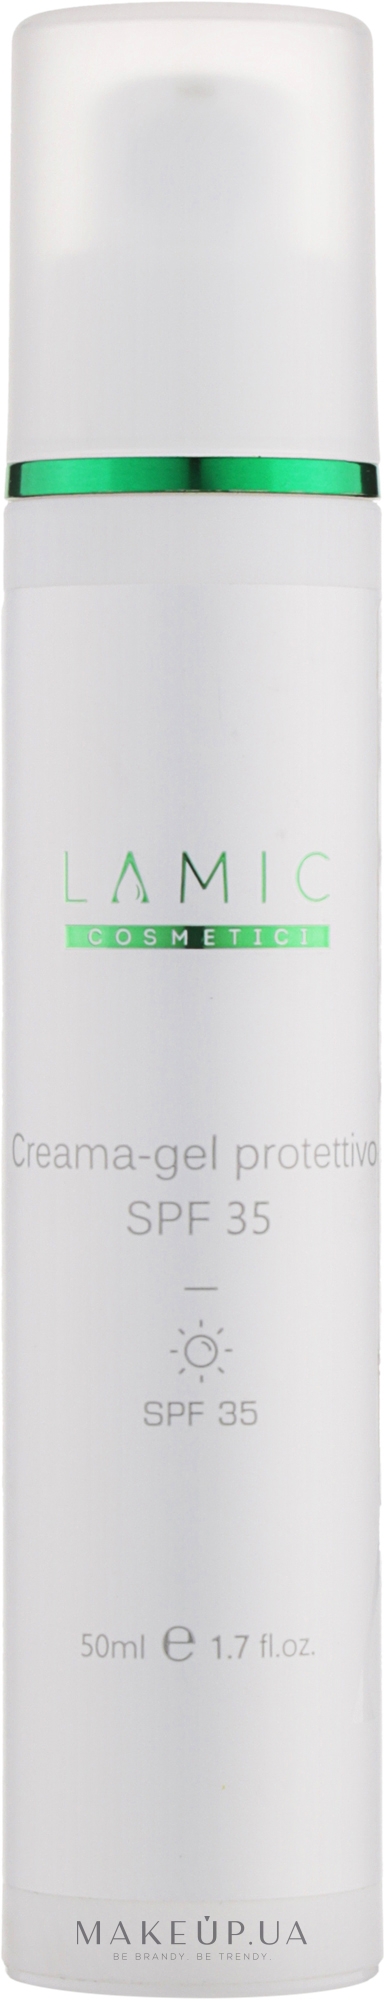 Защитный крем-гель для лица с SPF 35 - Lamic Cosmetici Creama-gel Protettivo — фото 50ml